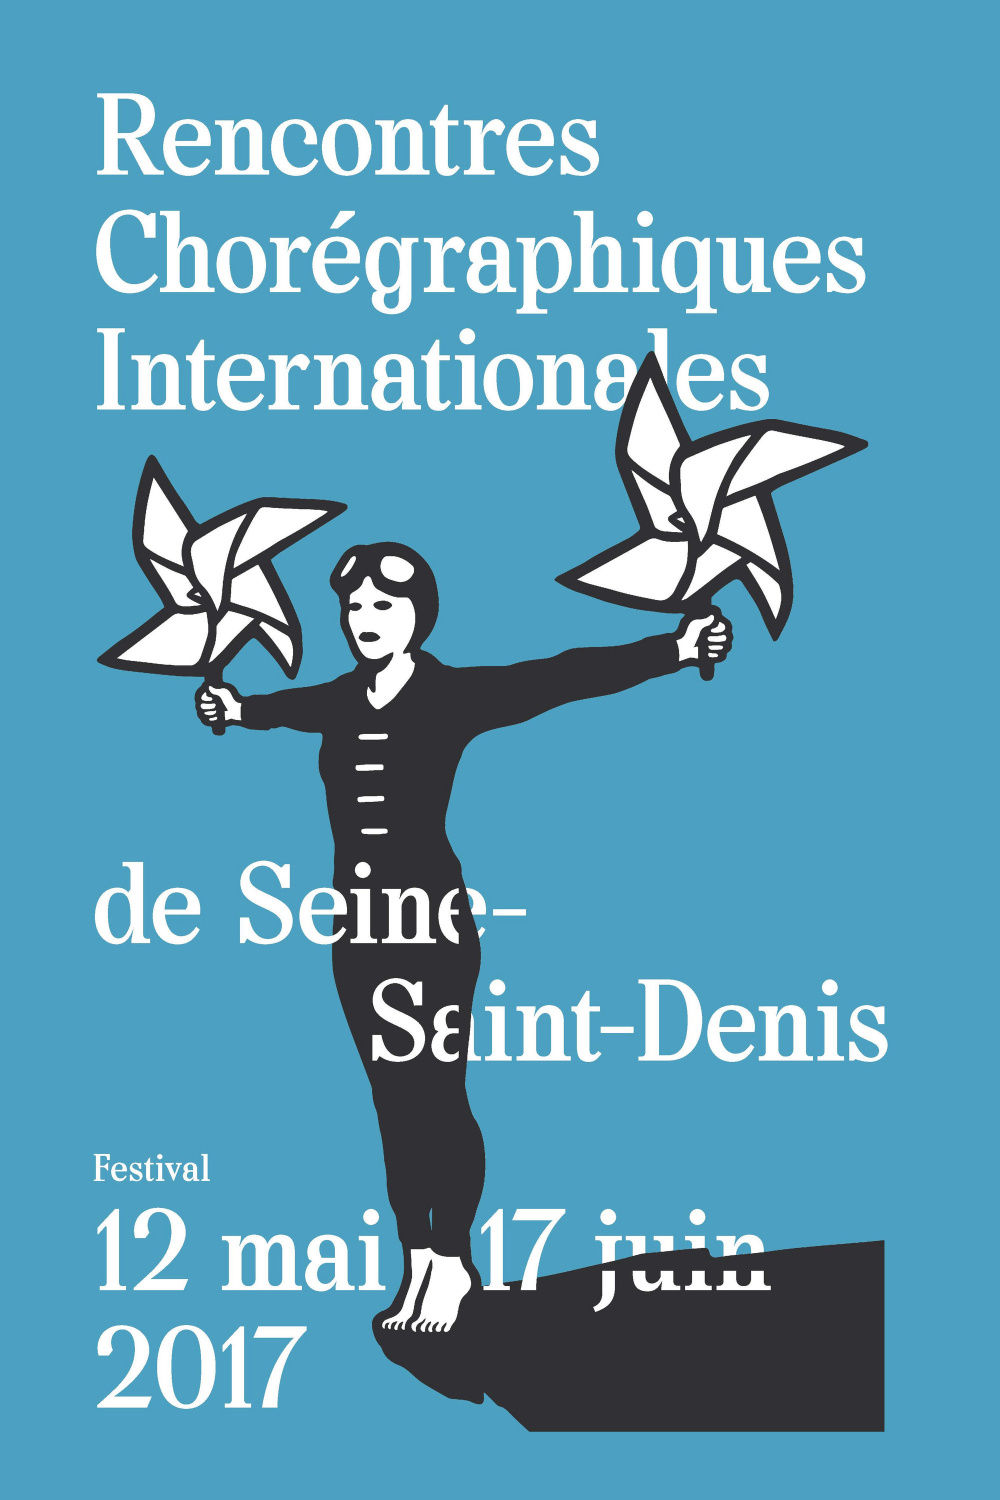 Rencontres chorégraphiques internationales de Seine Saint-Denis